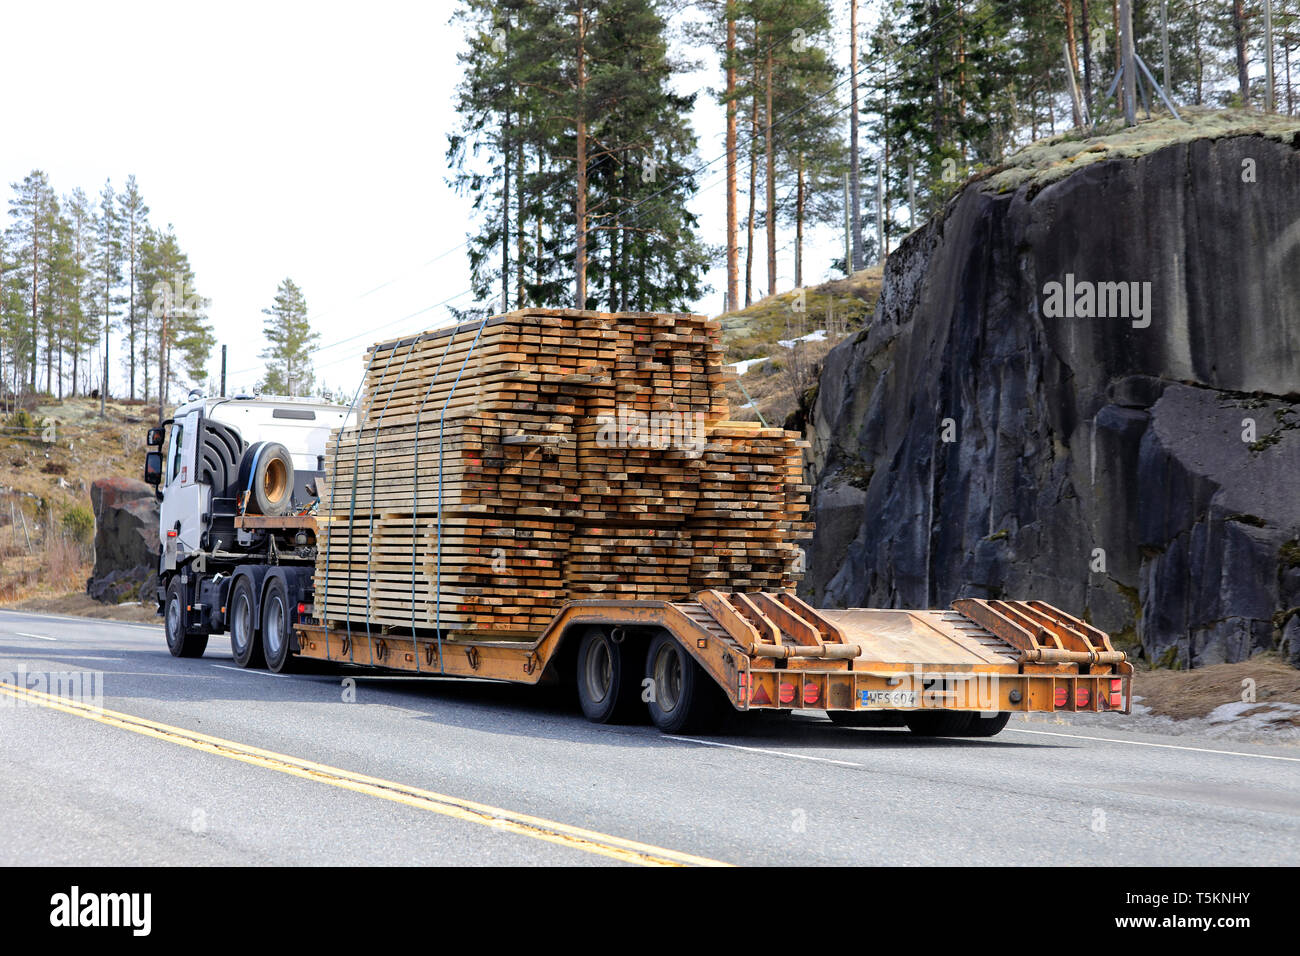 Salo, Finnland - 19 April, 2019: Fahrzeug zieht eine schwere Last von Schnittholz auf Schwanenhals Anhänger auf der Autobahn an einem Tag im Frühling, Ansicht von hinten. Stockfoto